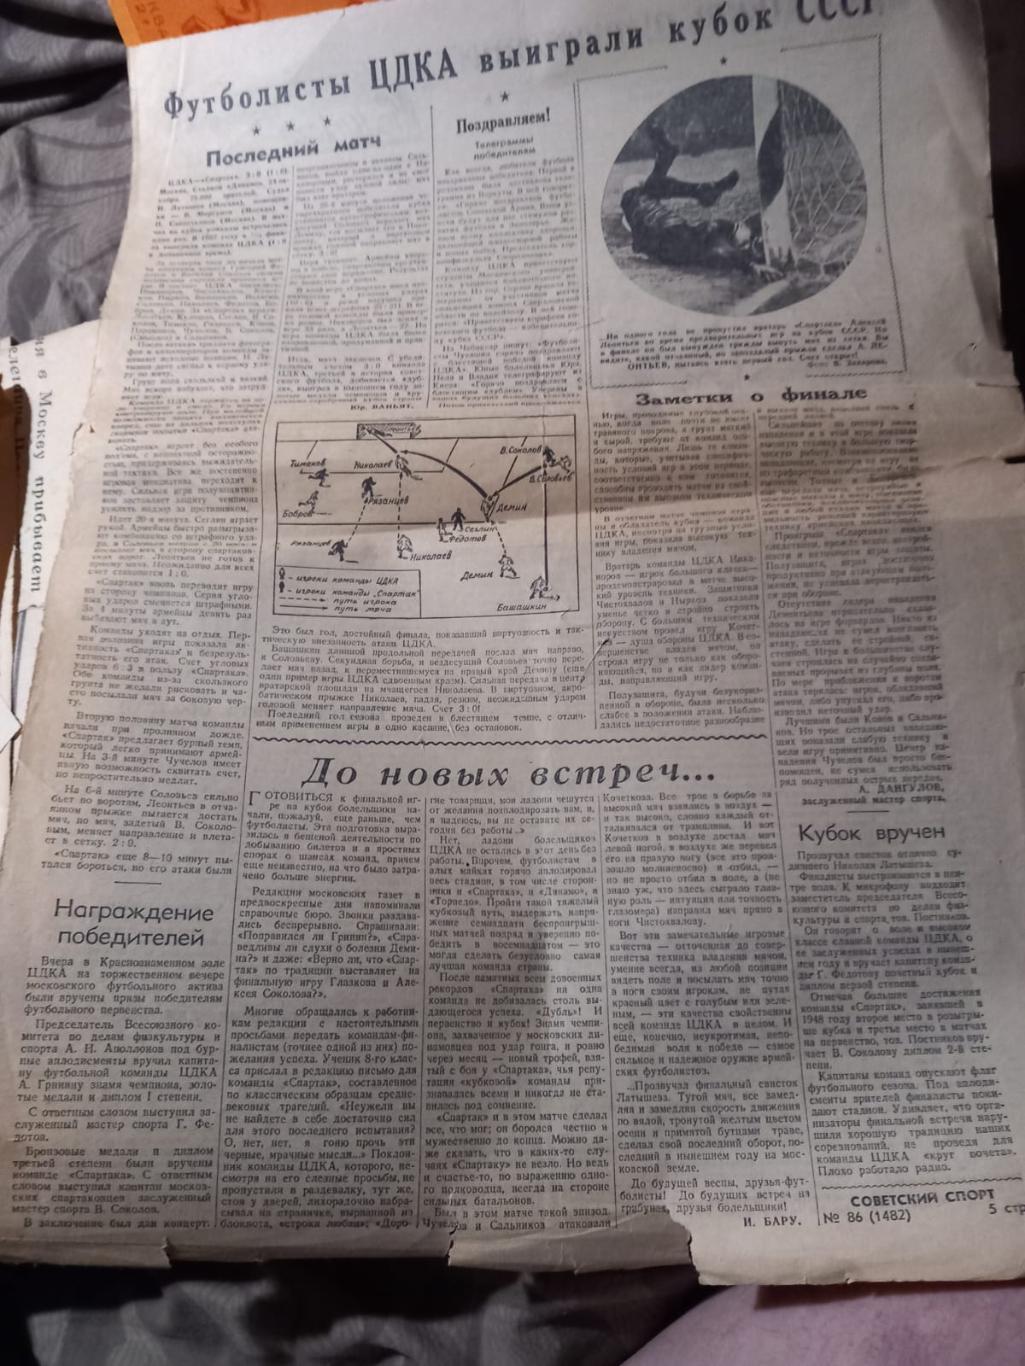 Вырезка из газеты Советский спорт. ЦДКА выиграли кубок СССР 1948